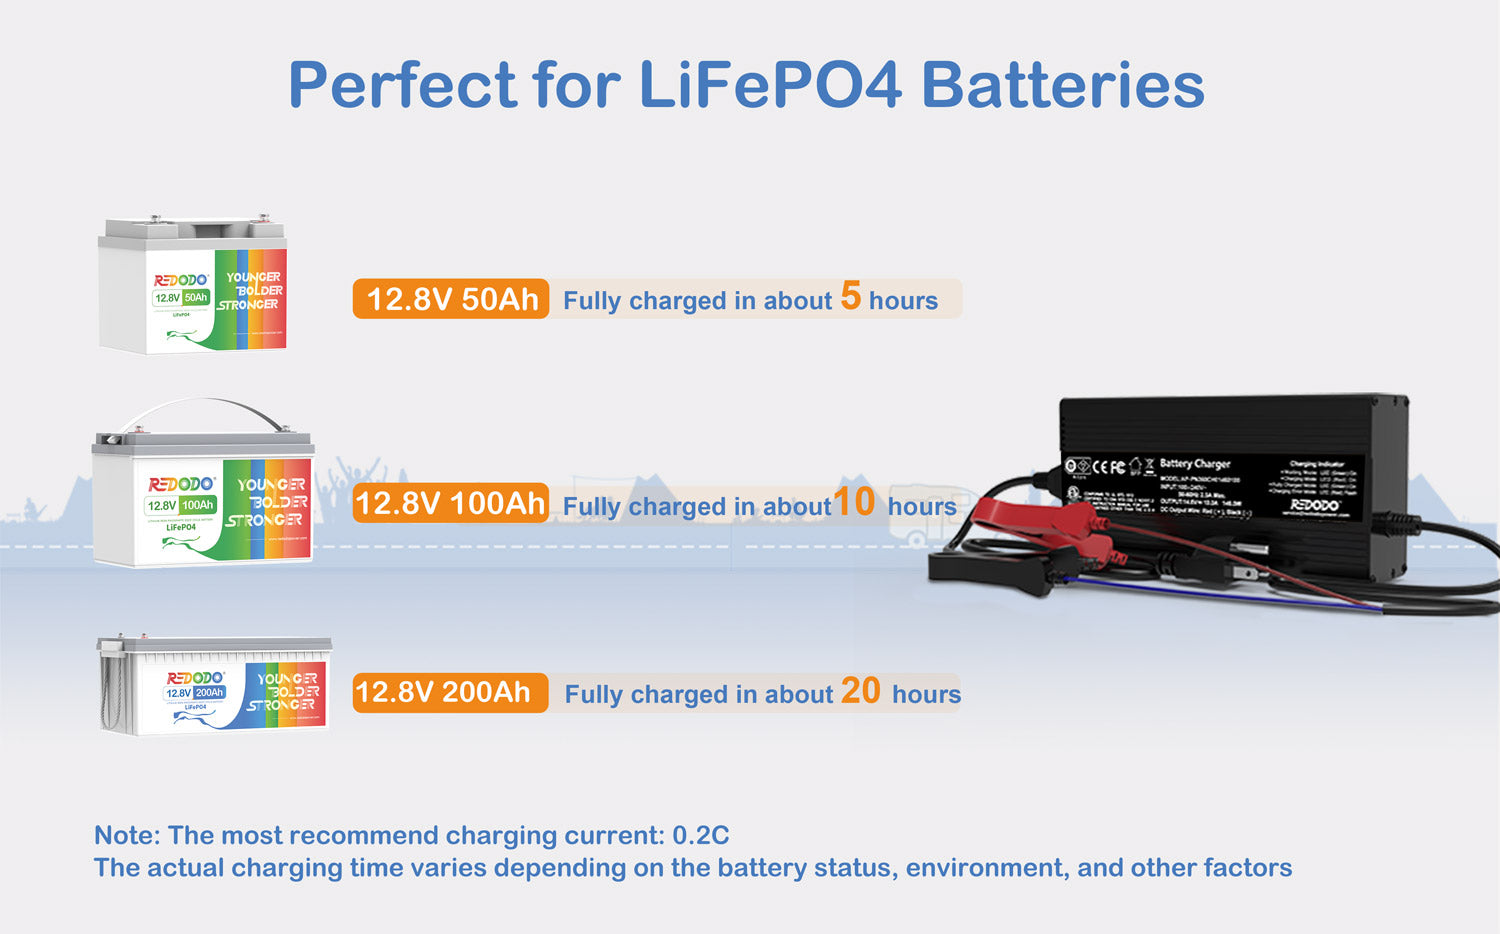 Redodo 14.6V 10A LiFePO4 Battery Charger - Redodo Power